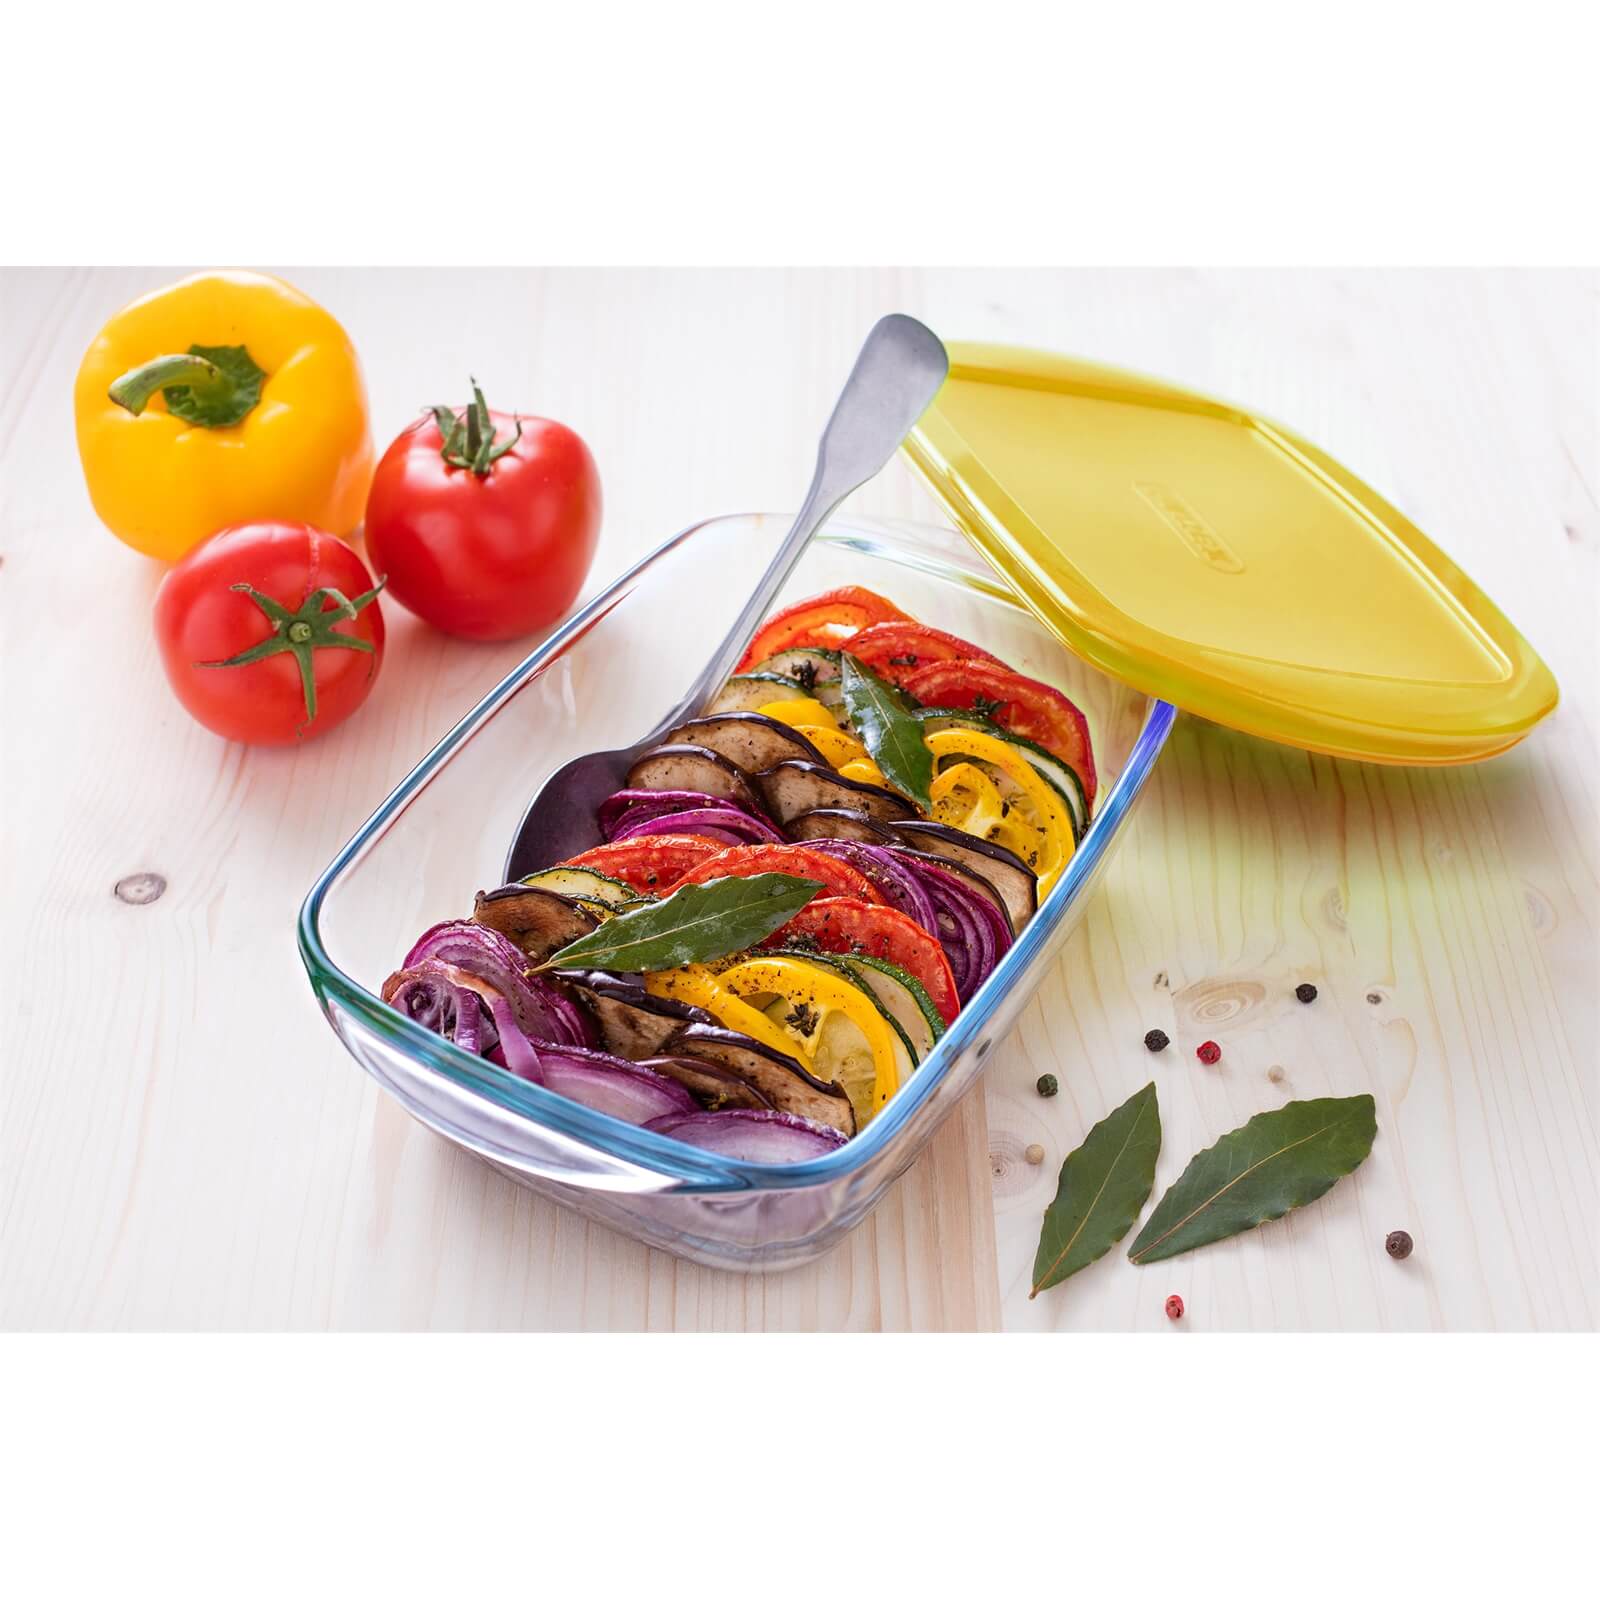 Pyrex Cook & Store Rectangular 3 Piece Food Storage Set - Yellow